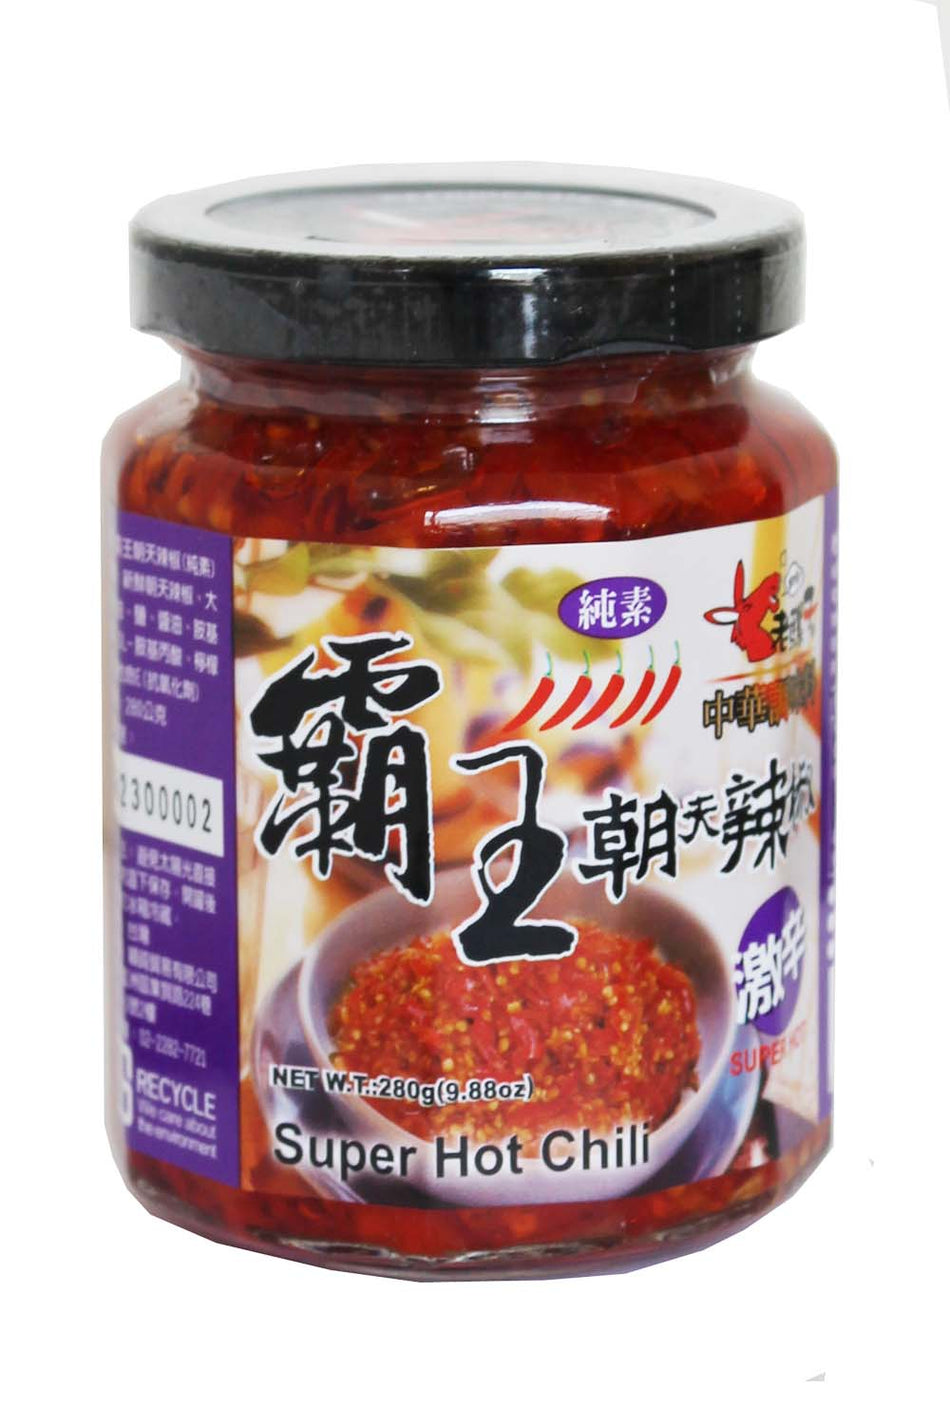 Old Mule Super Hot Chili